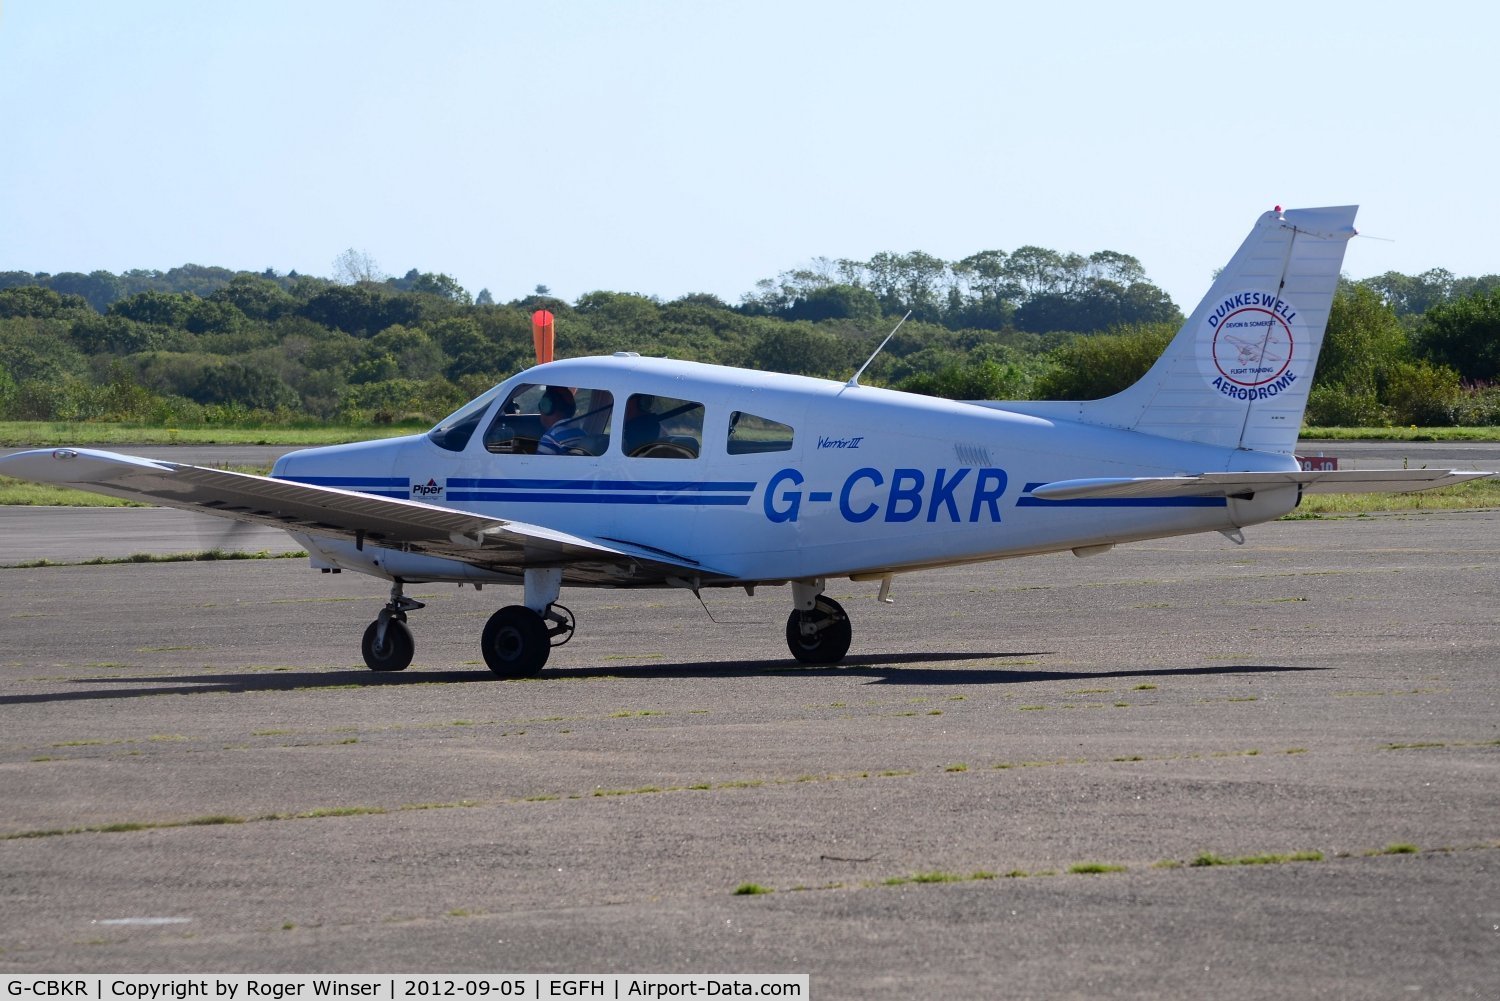 G-CBKR, 2002 Piper PA-28-161 Warrior III C/N 2842143, Visiting Cherokee Warrior III. Previously registered N5334N.